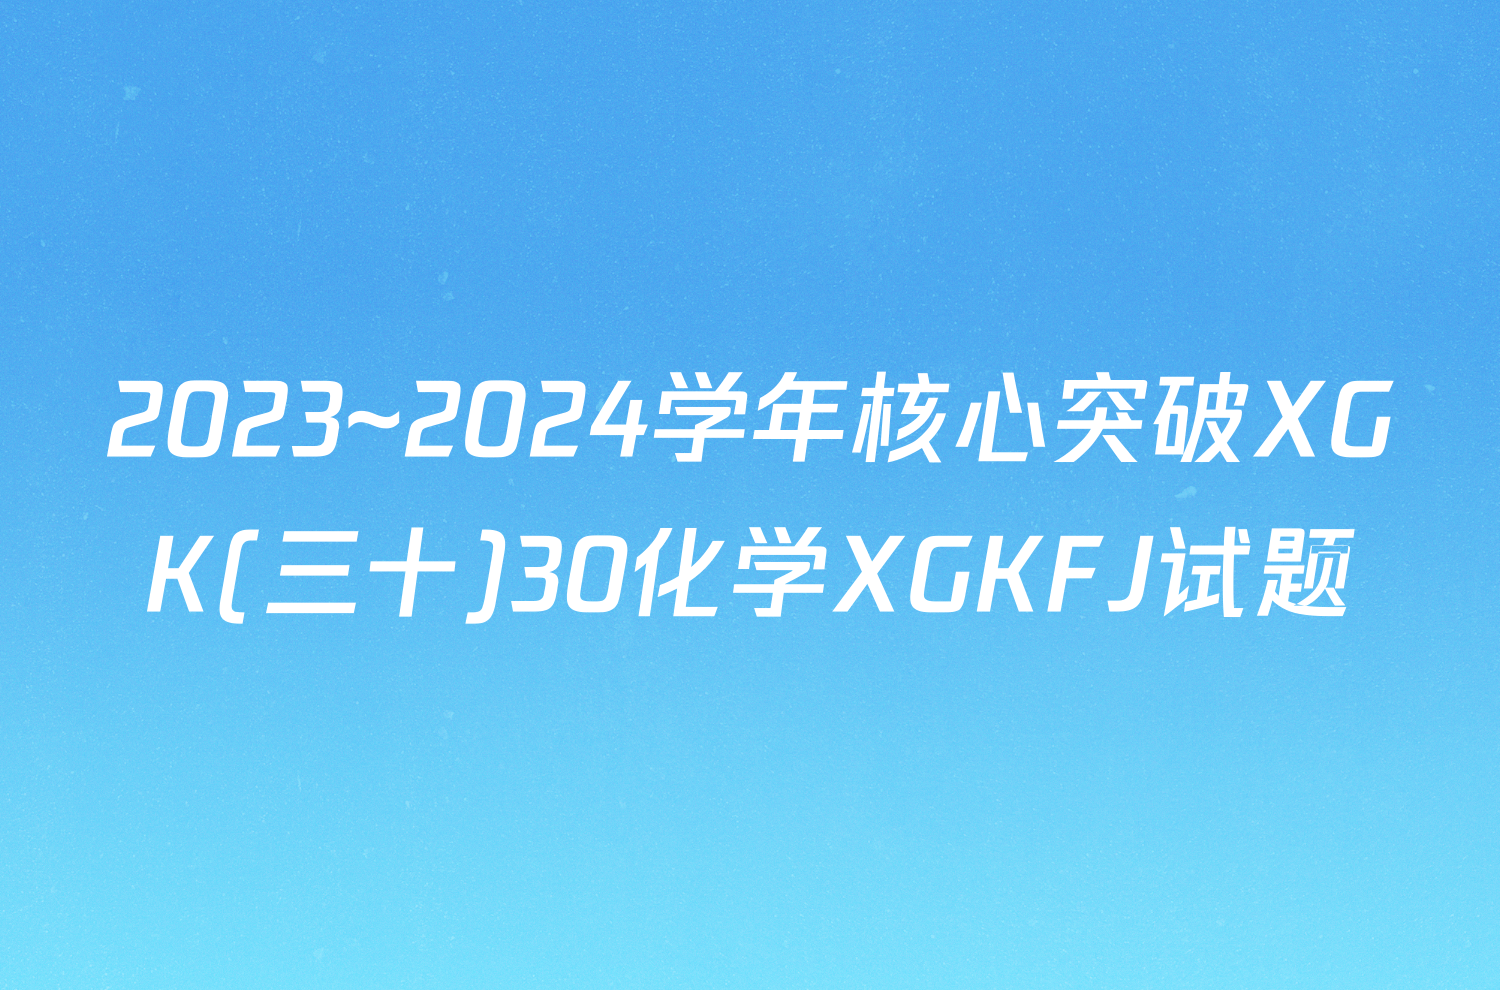 2023~2024学年核心突破XGK(三十)30化学XGKFJ试题